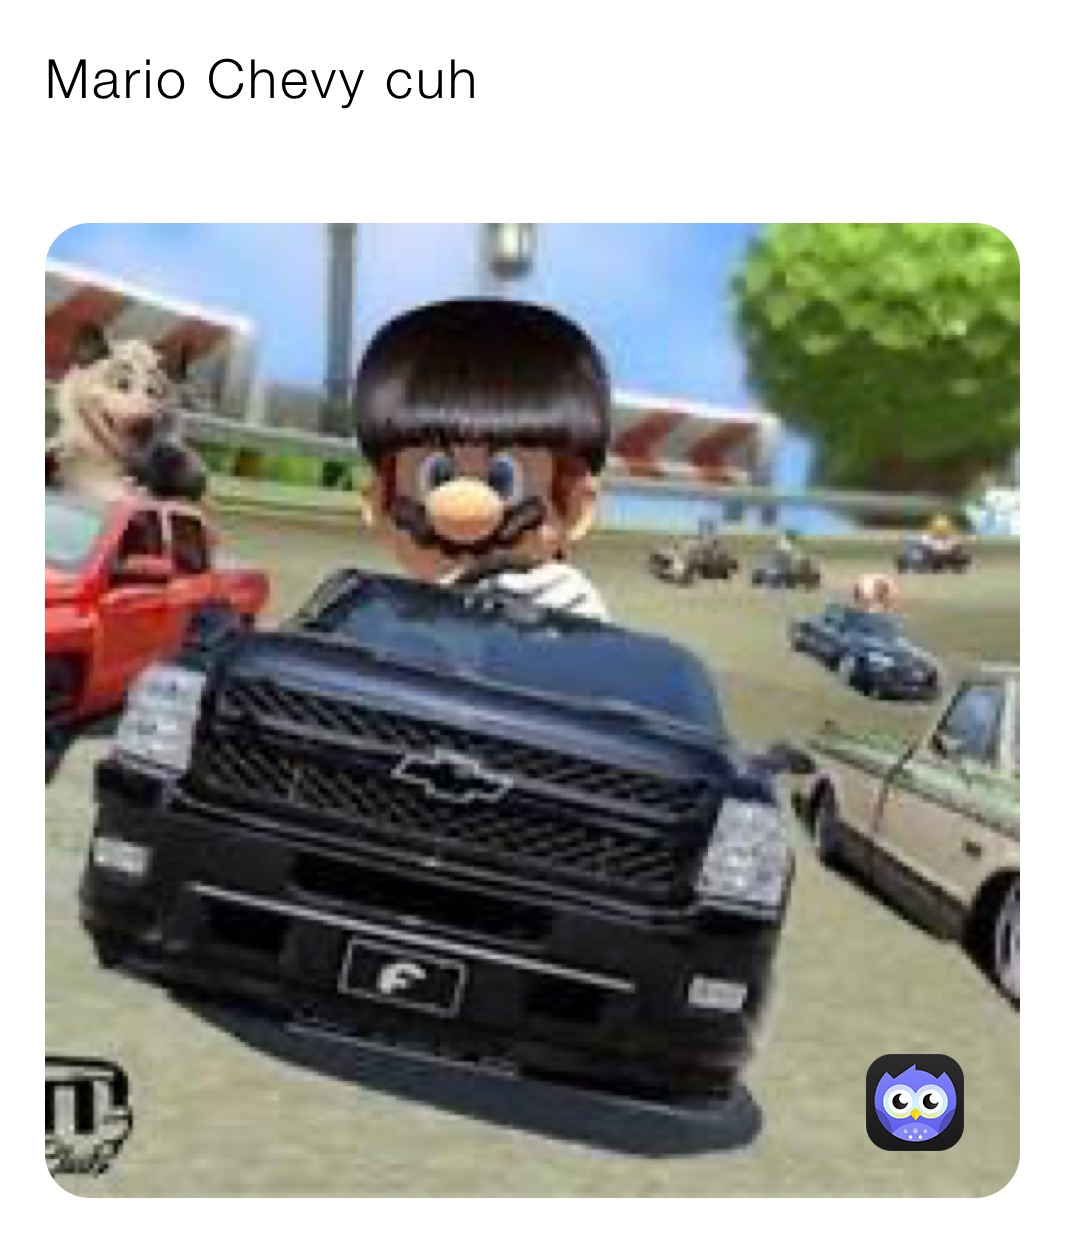 Mario Chevy cuh
